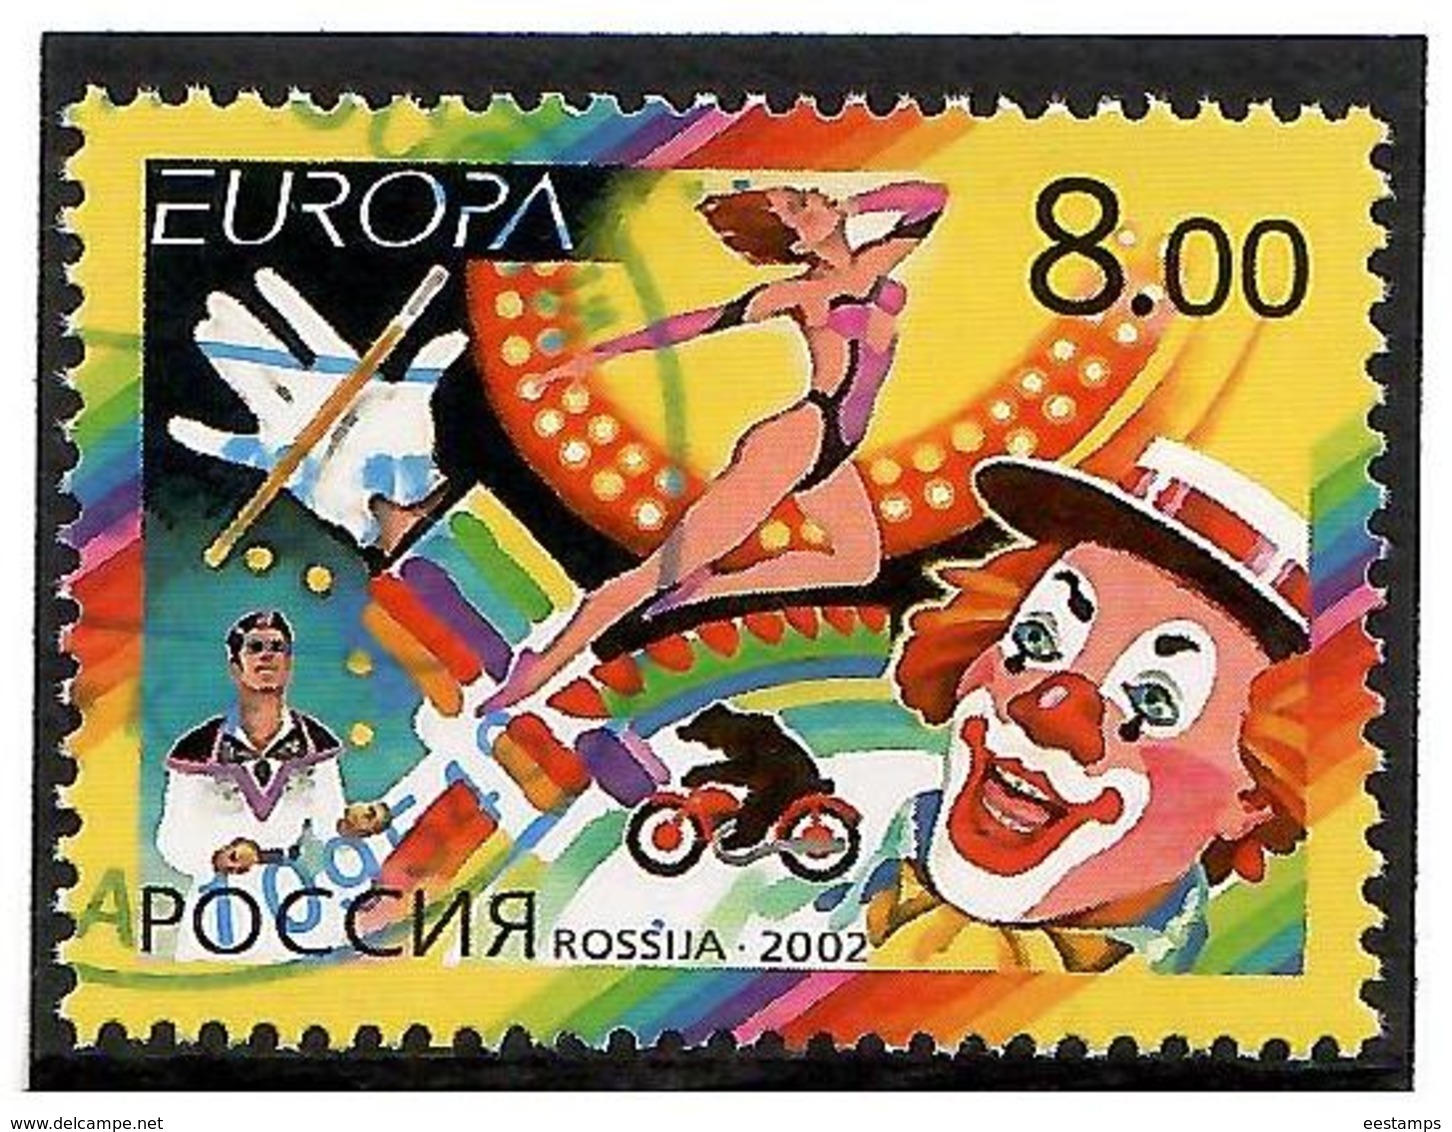 Russia.2002 EUROPA  (Circus). 1v: 8.00   Michel # 987  (oo) - Usati